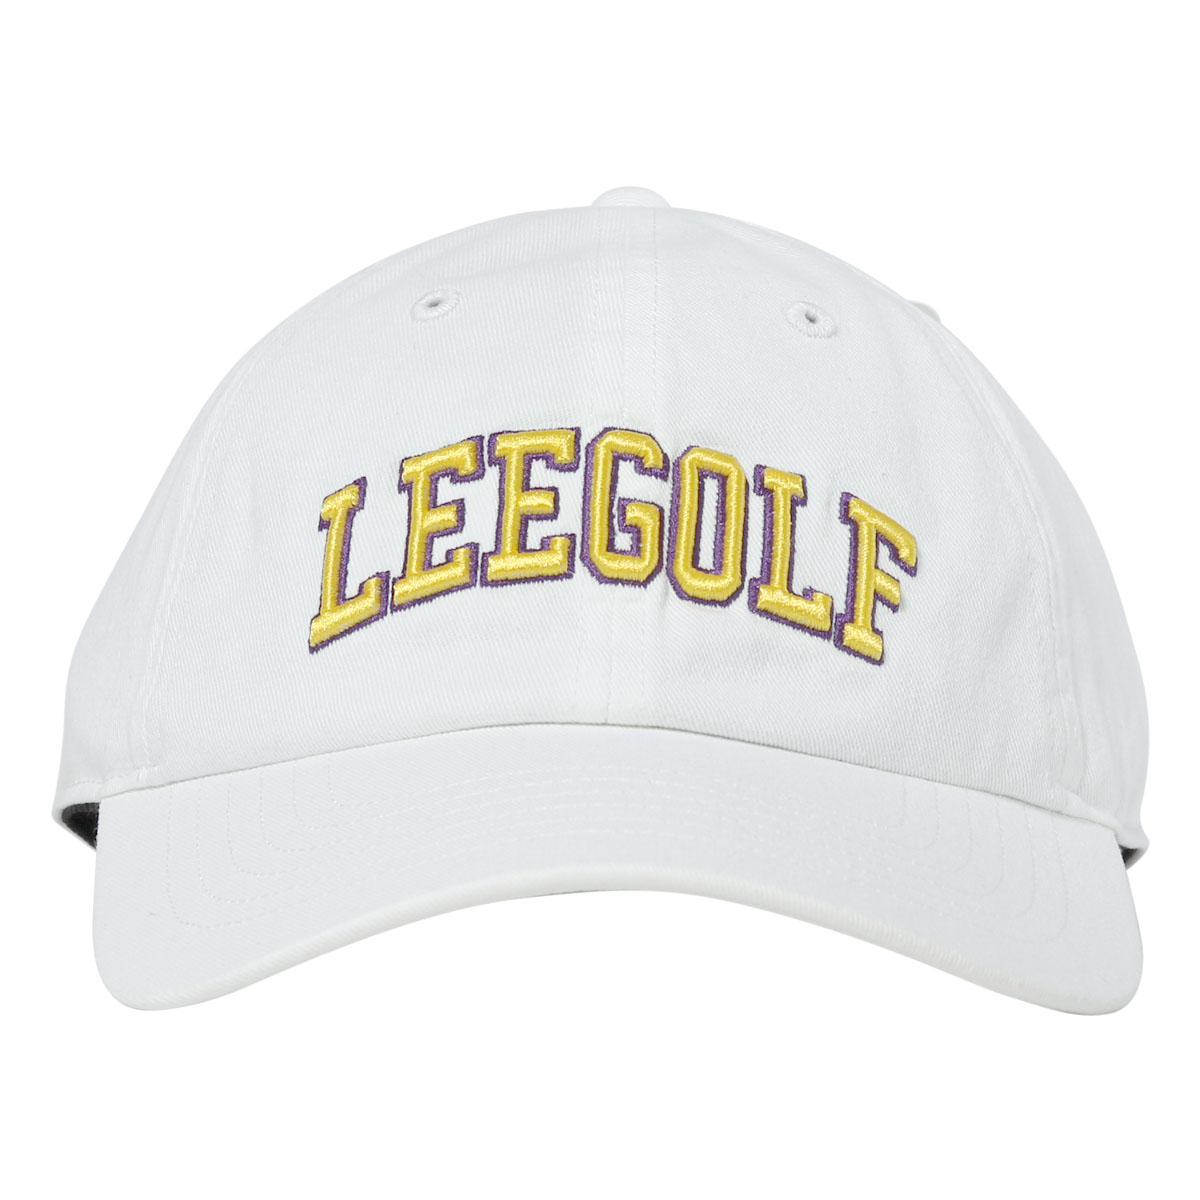 Lee ゴルフ キャップ ロゴ メンズ レディース LG4005 サイズ調整可能 帽子 リー